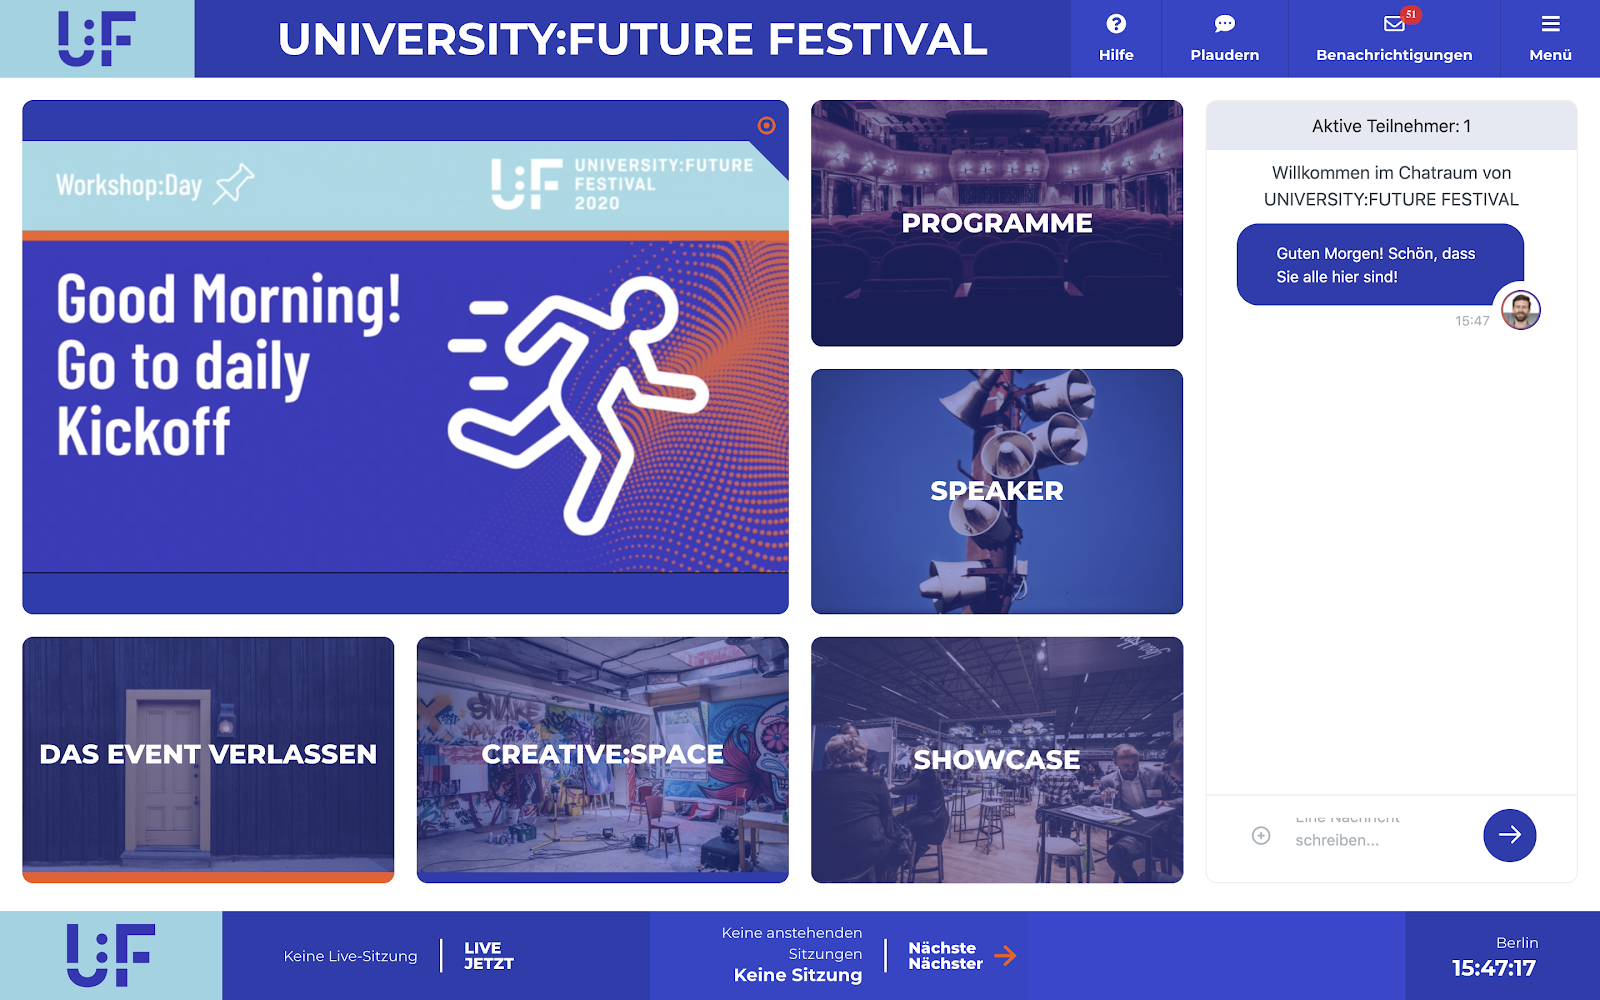 Die Startseite der Eventplattform vom University:Future Festival